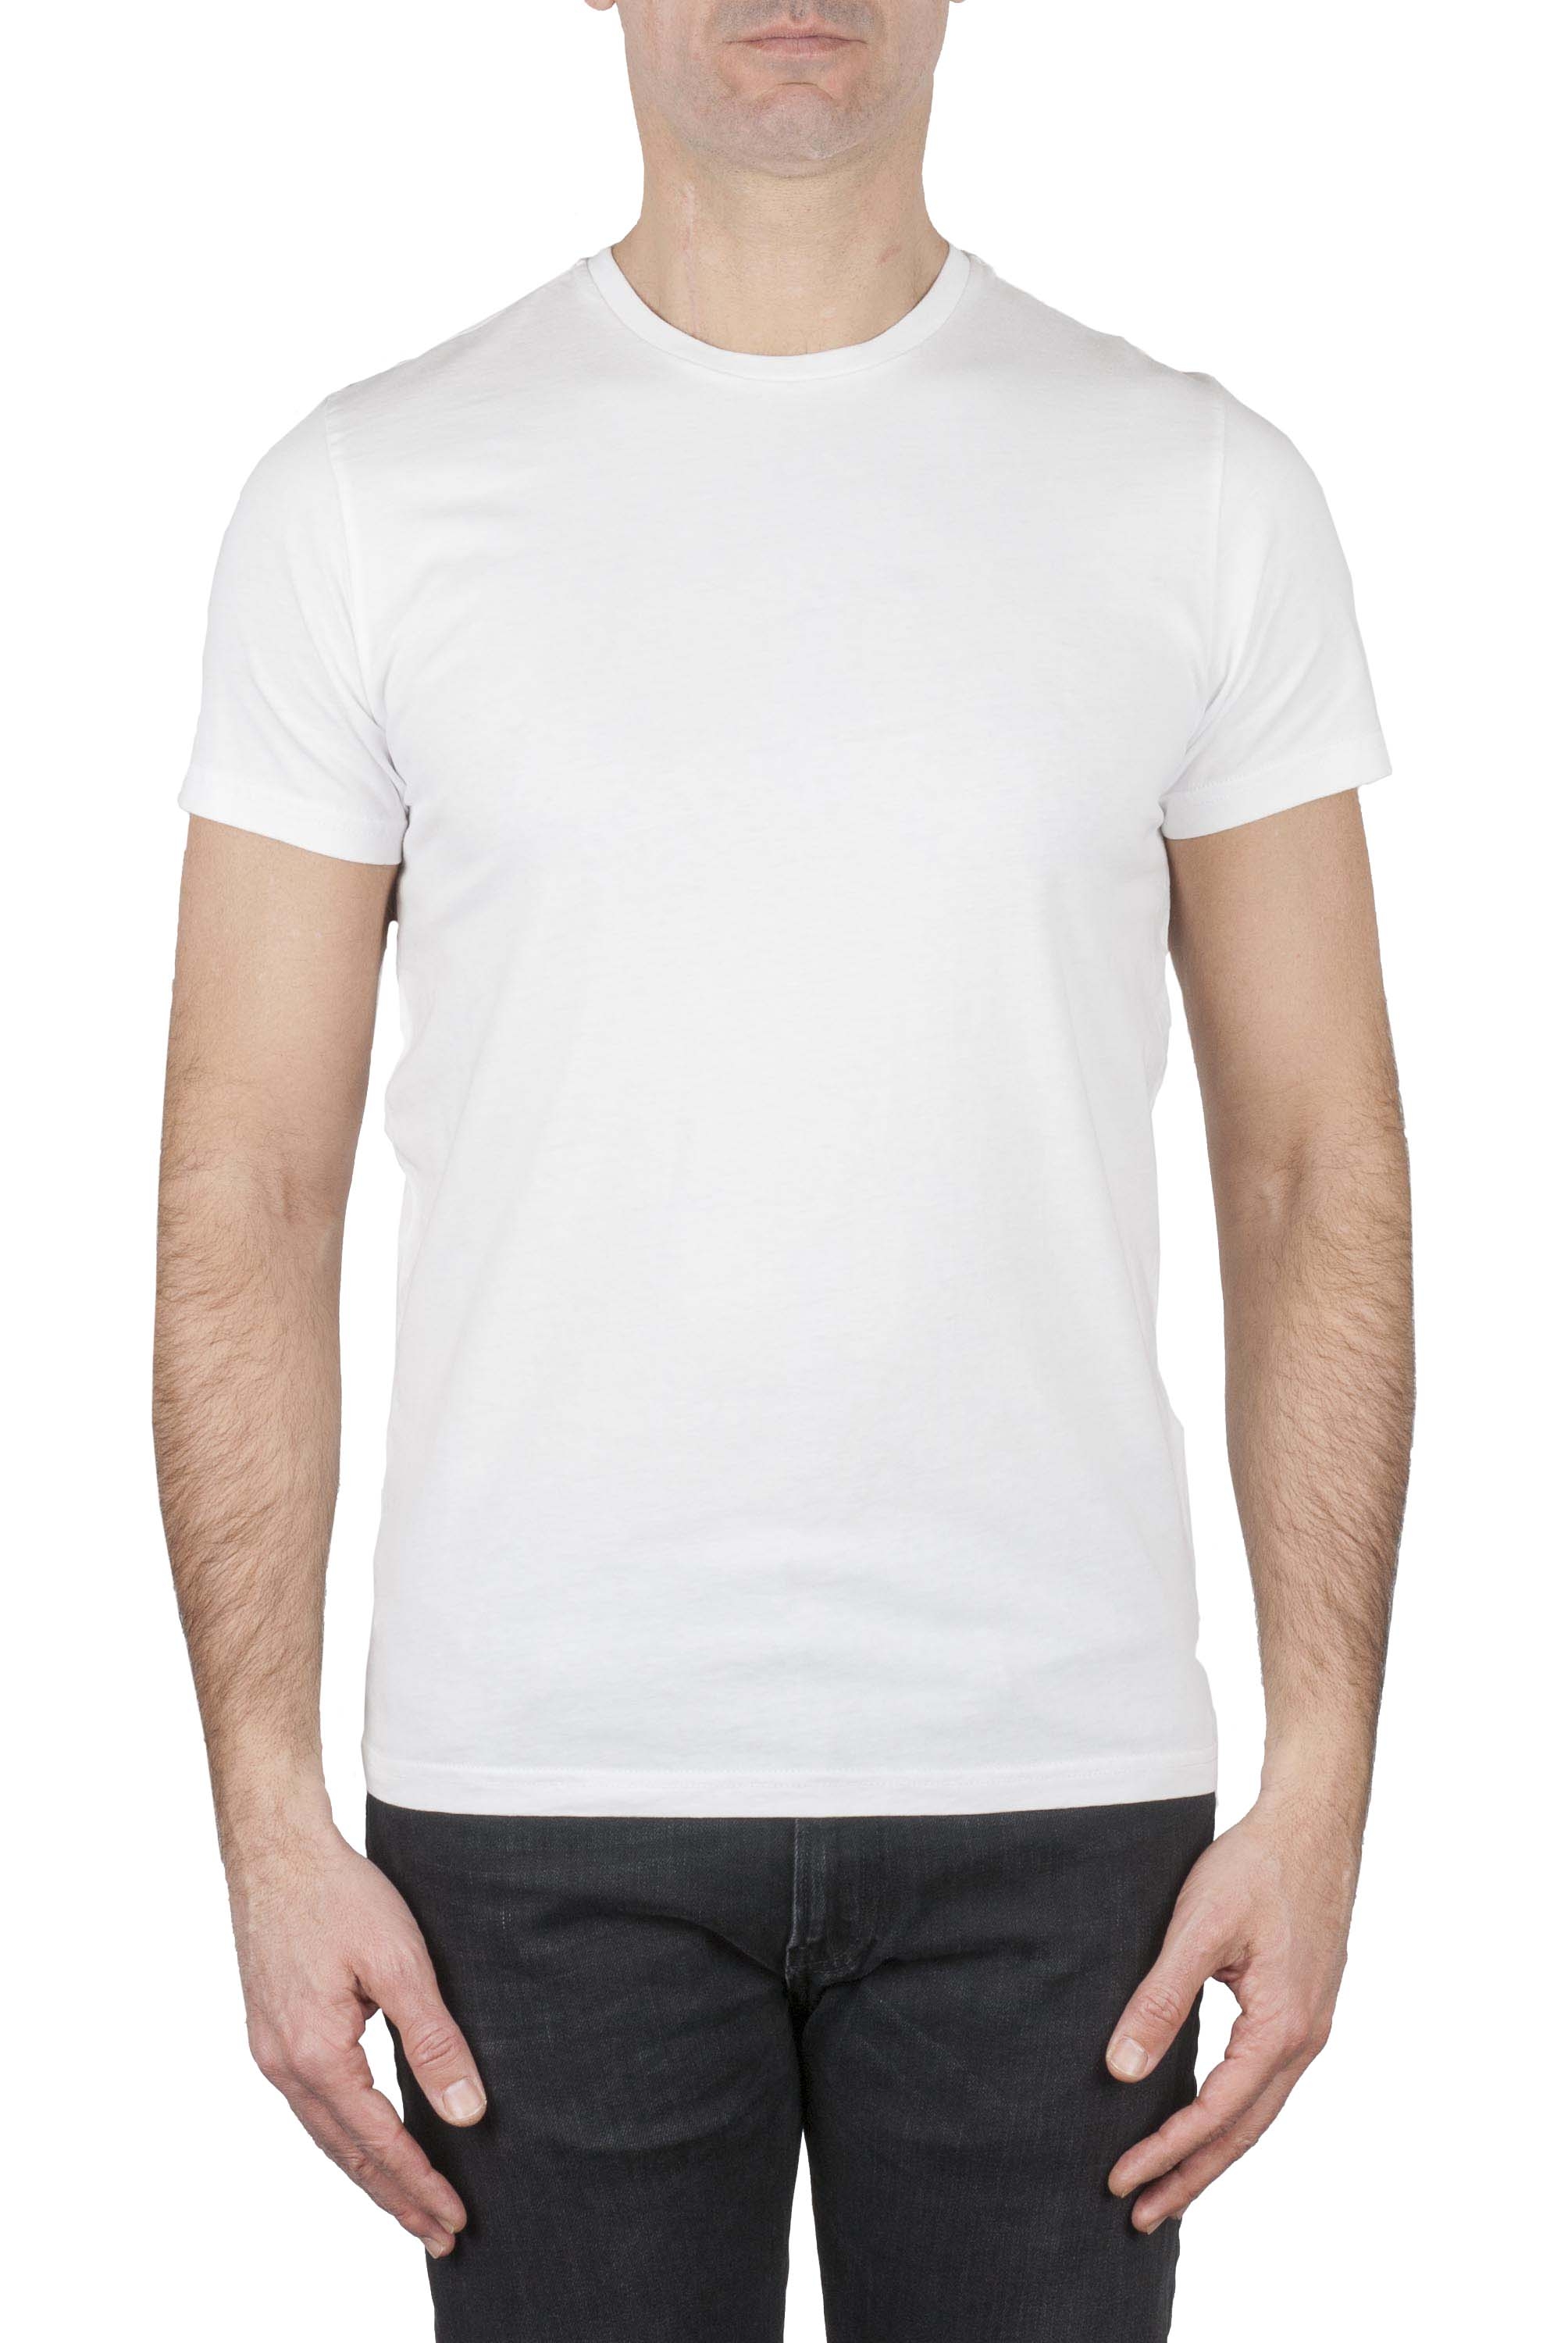 SBU 03148_2020AW Clásica camiseta de cuello redondo blanca manga corta de algodón 01